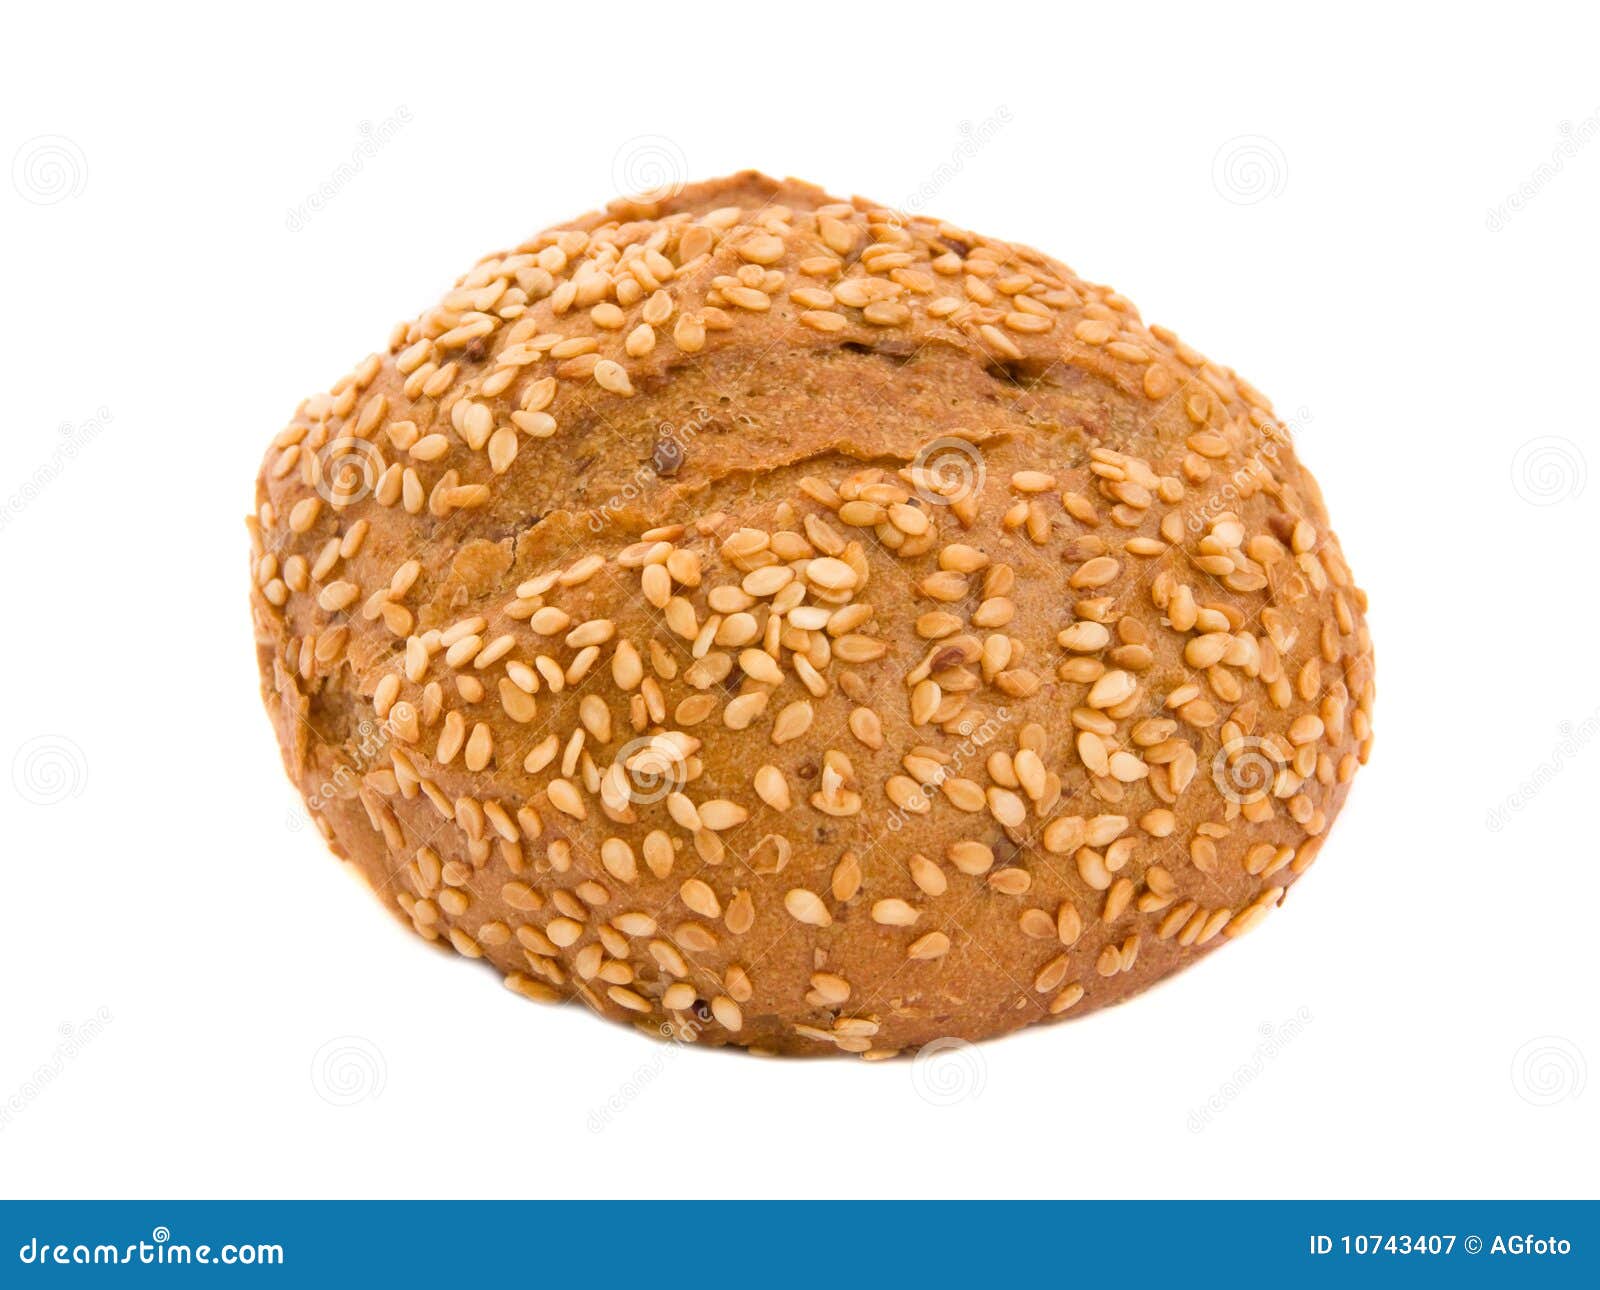 Sesame bun stock image. Image of gourmet, life, crust - 10743407